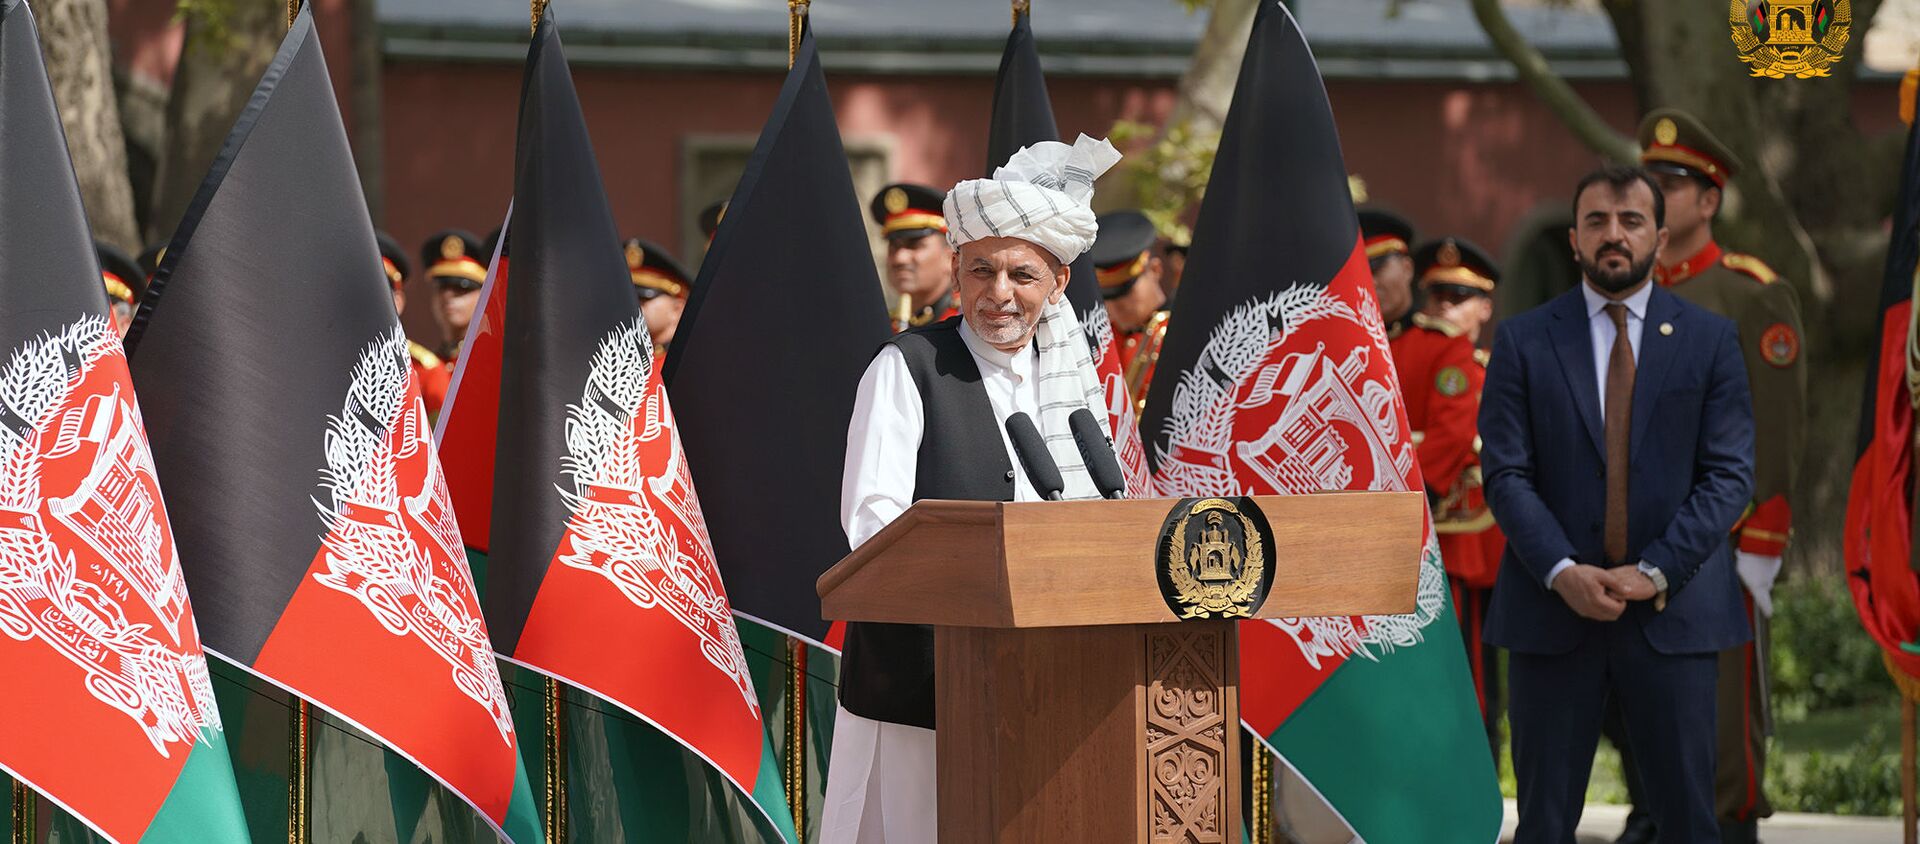 غنی در روز پرچم: ما تسلیم طرح های بربادی افغانستان نمی شویم - اسپوتنیک افغانستان  , 1920, 29.07.2021